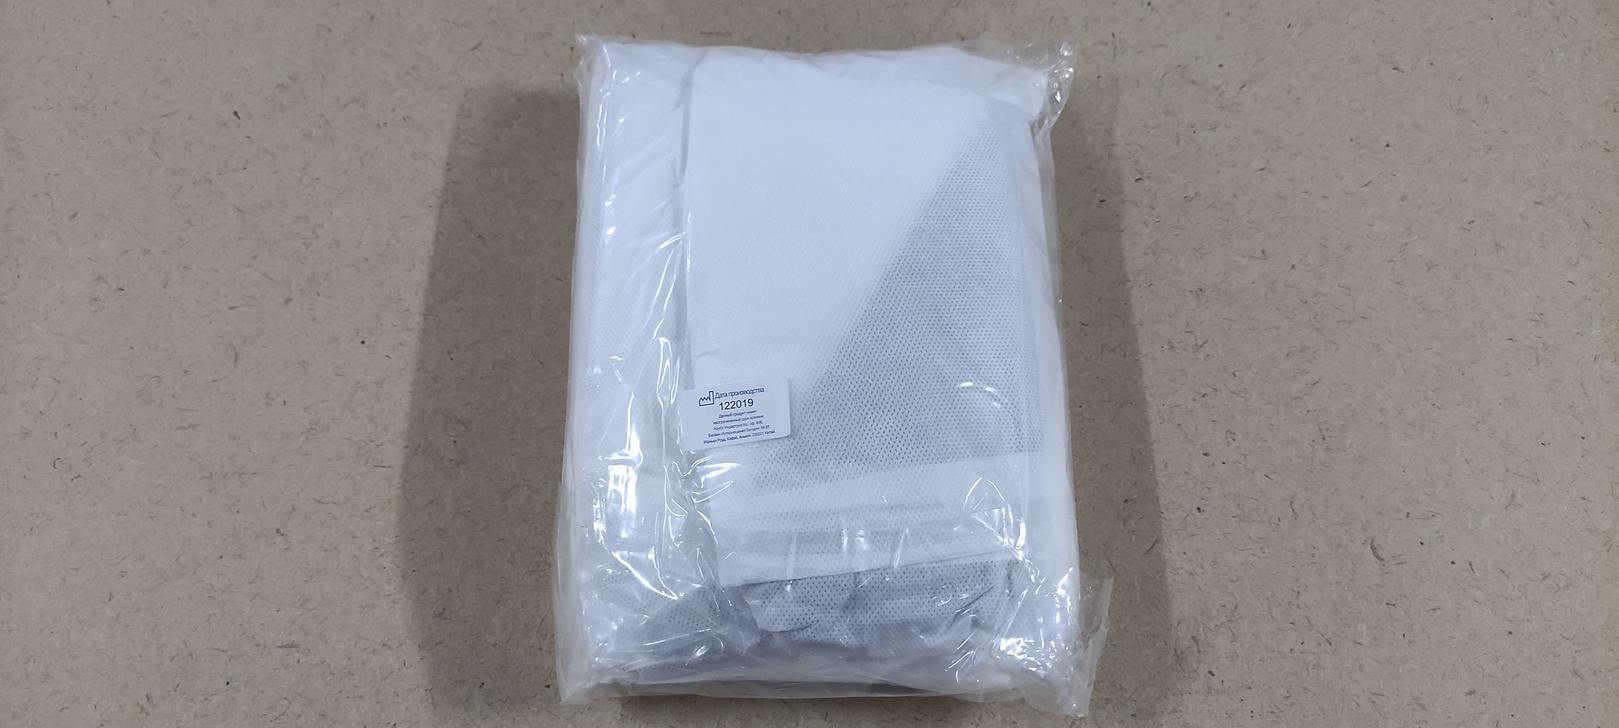 Защитный одноразовый комбинезон с капюшоном малярный Kleenguard A25+ ЗМ белый размер ХХL								